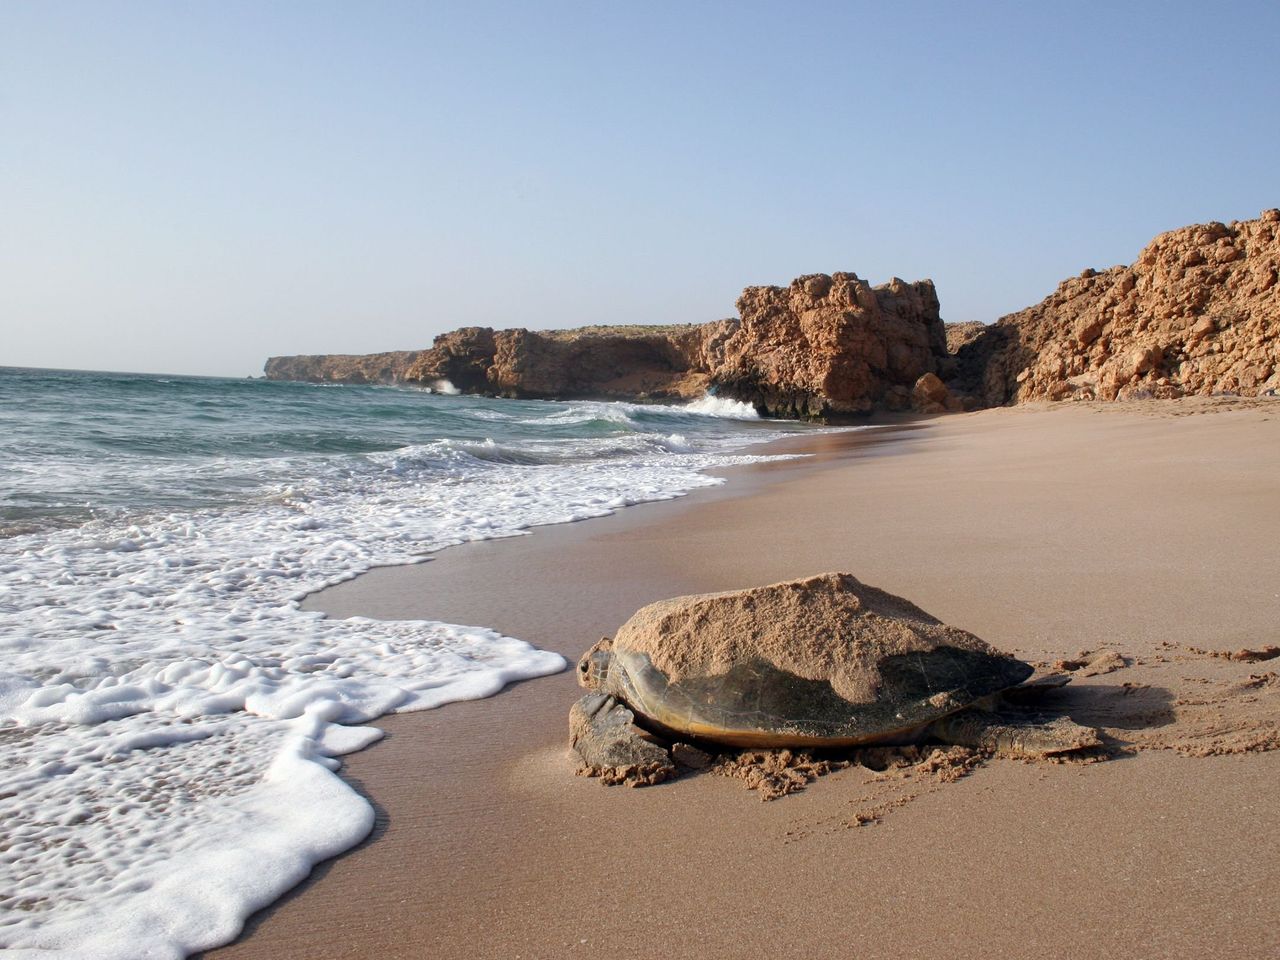 Сур — корабельная столица Омана + пляж черепах | Цена 1200$, отзывы, описание экскурсии